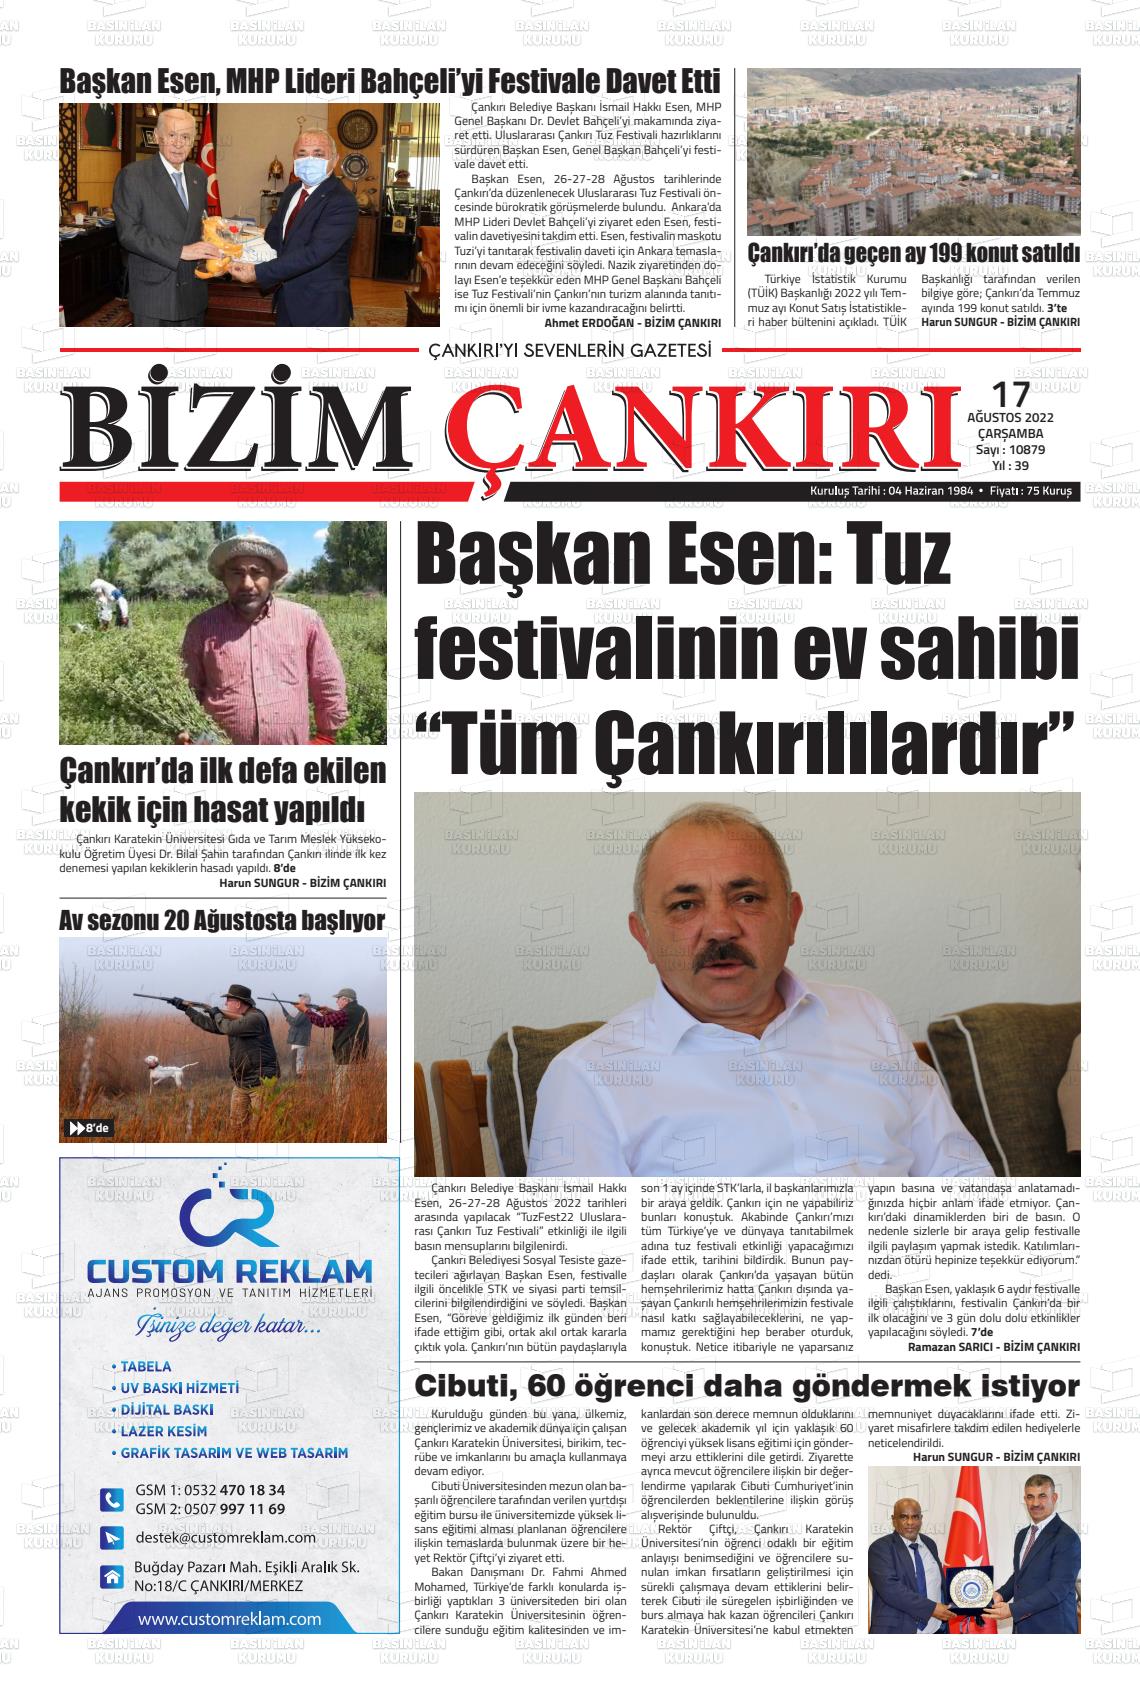 17 Ağustos 2022 Bizim Çankırı Gazete Manşeti